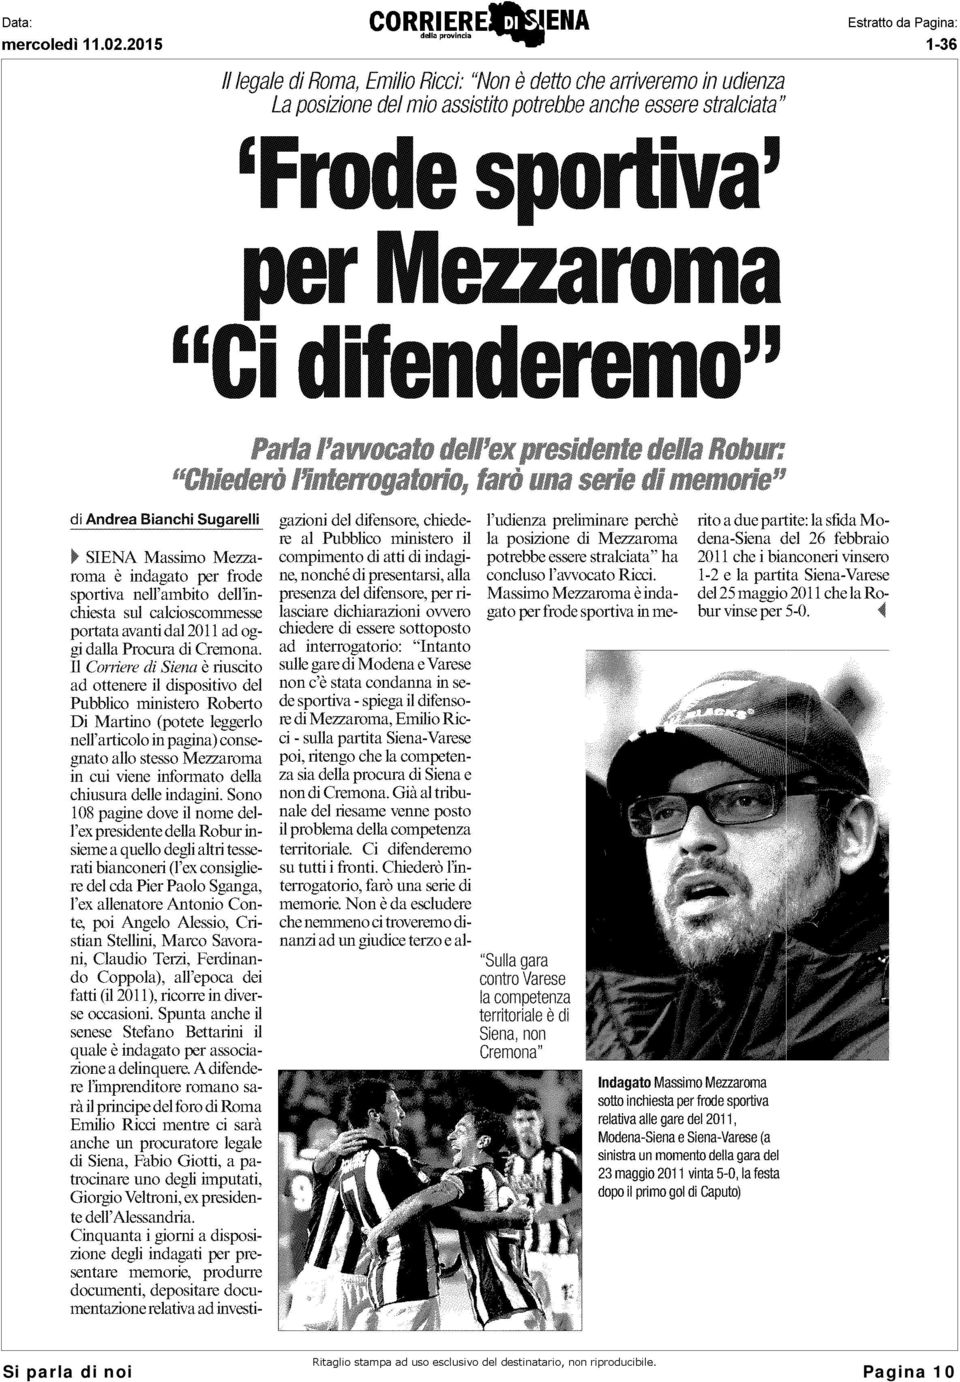 Il Corriere di Siena è riuscito ad ottenere il dispositivo del Pubblico ministero Roberto Di Martino (potete leggerlo nell'articolo in pagina) consegnato allo stesso Mezzaroma in cui viene informato